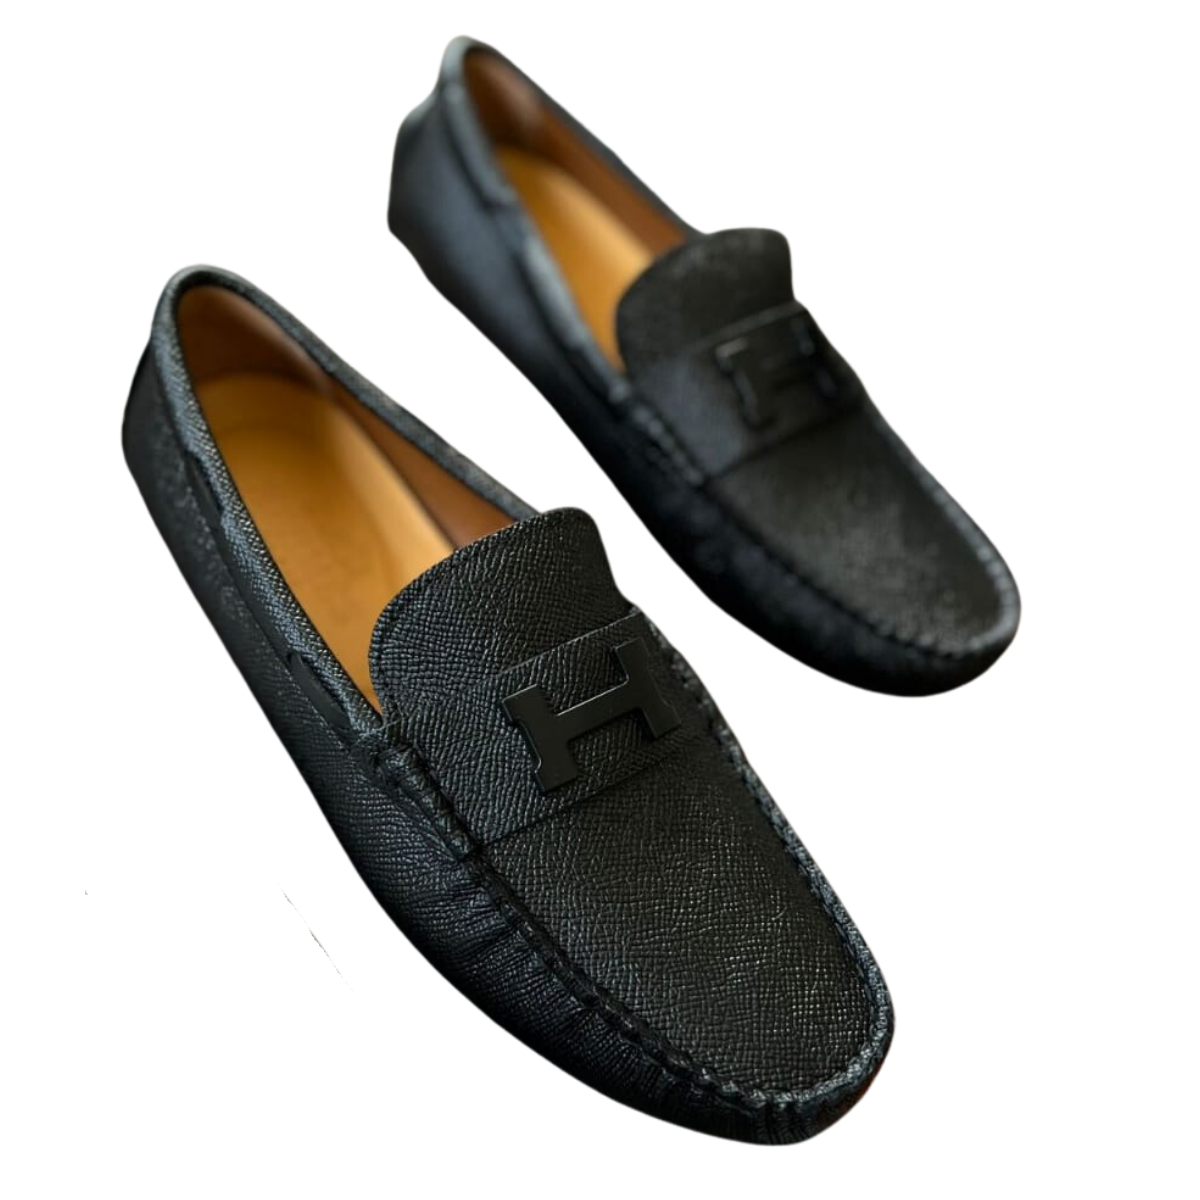 zapatos mocasines Hermes París hombre originales comprar en onlineshoppingcenterg Colombia centro de compras en linea osc 1